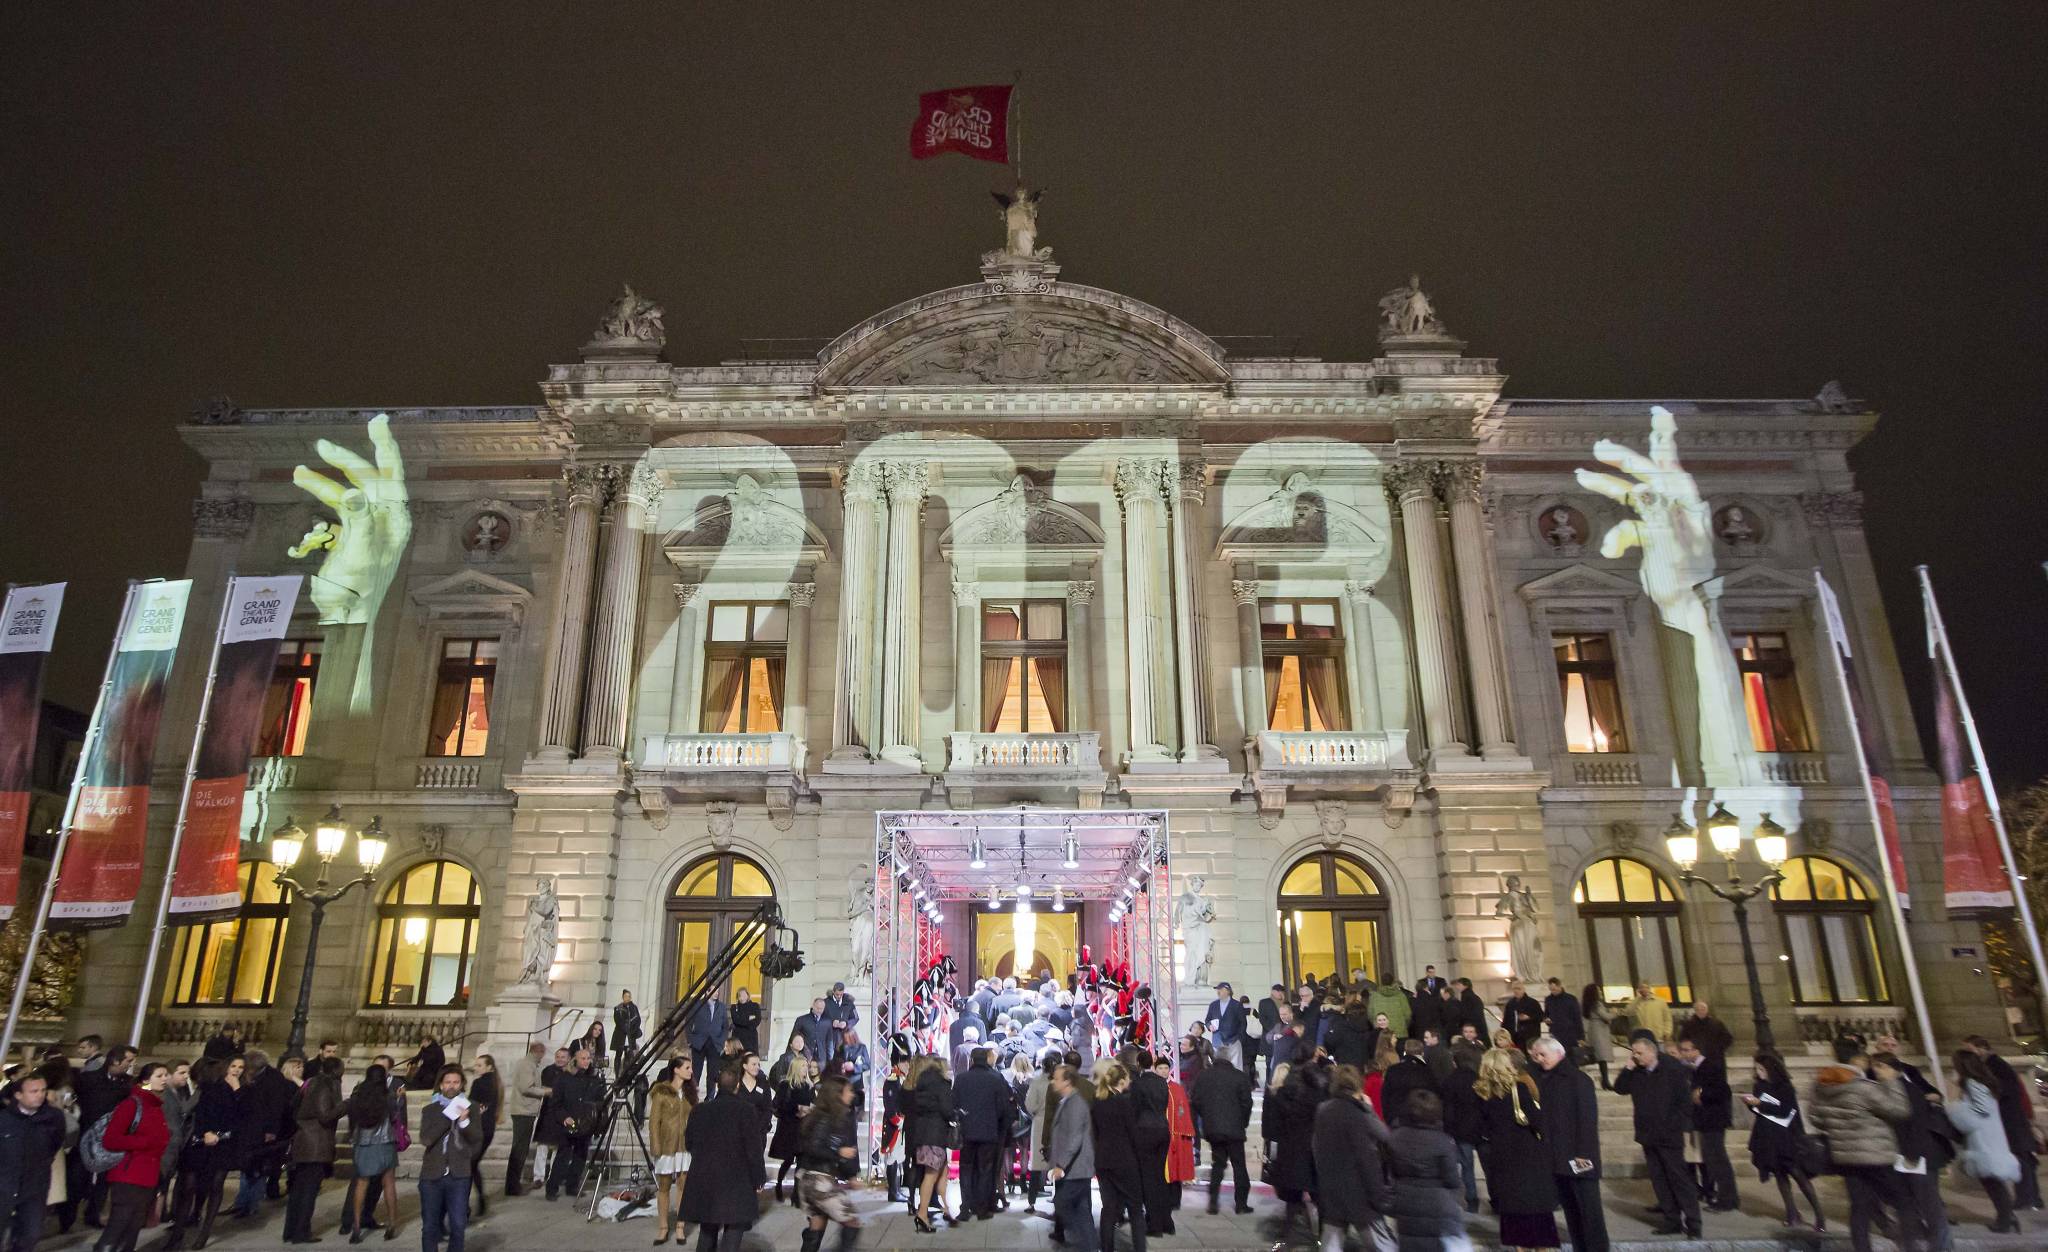 The Grand Théâtre de Genève lit up by Gerry Hofstetter